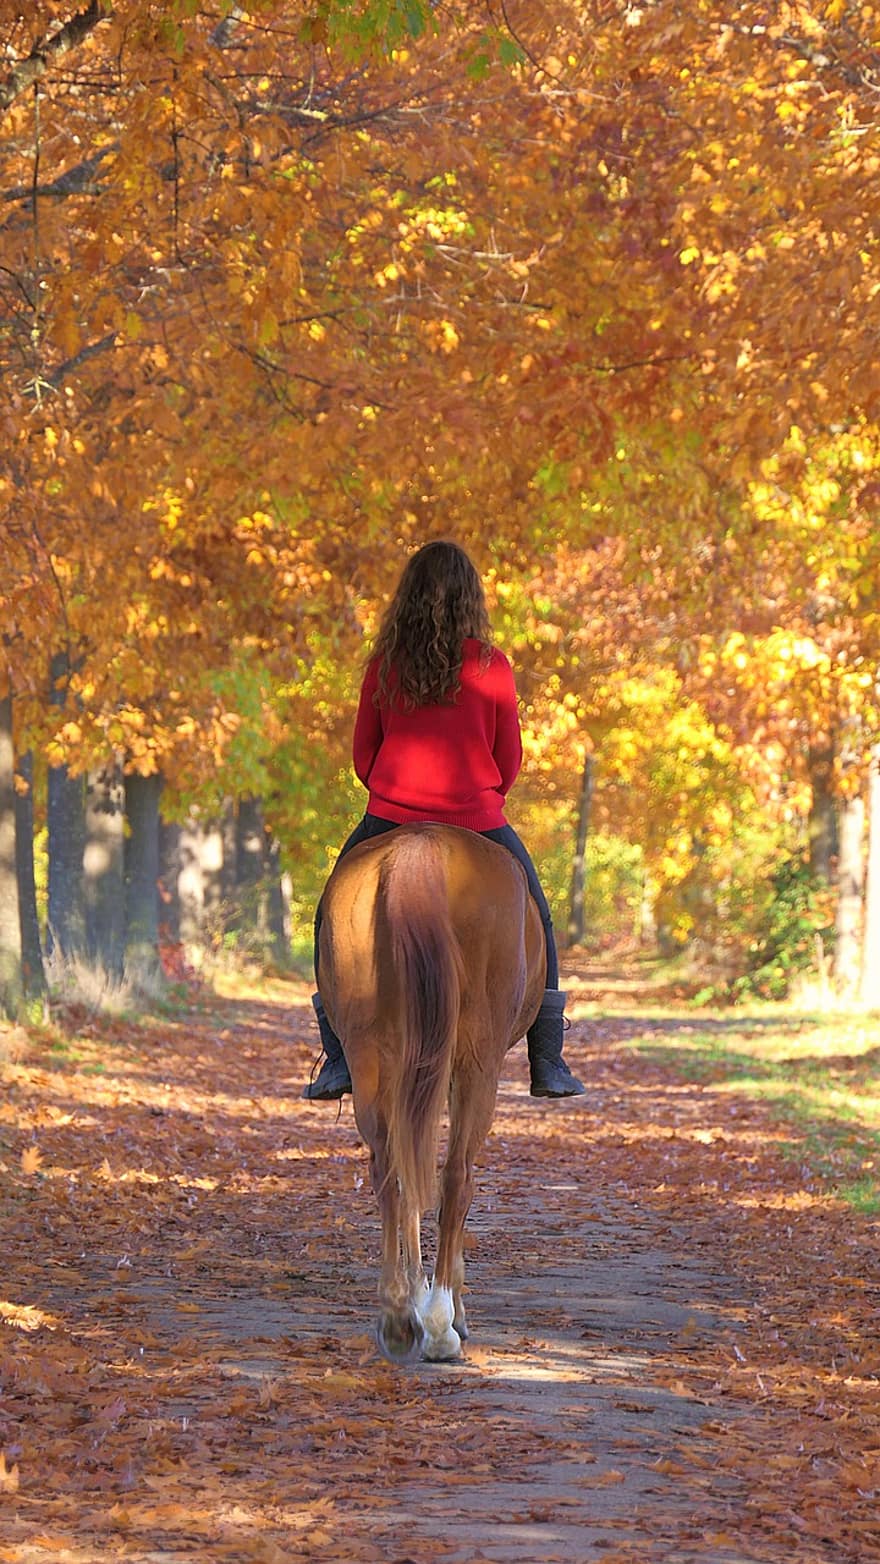 кінь, дівчина, їздити, шлях, падіння, верхова їзда, конячий, кінний спорт, кінний, стежка, дерева